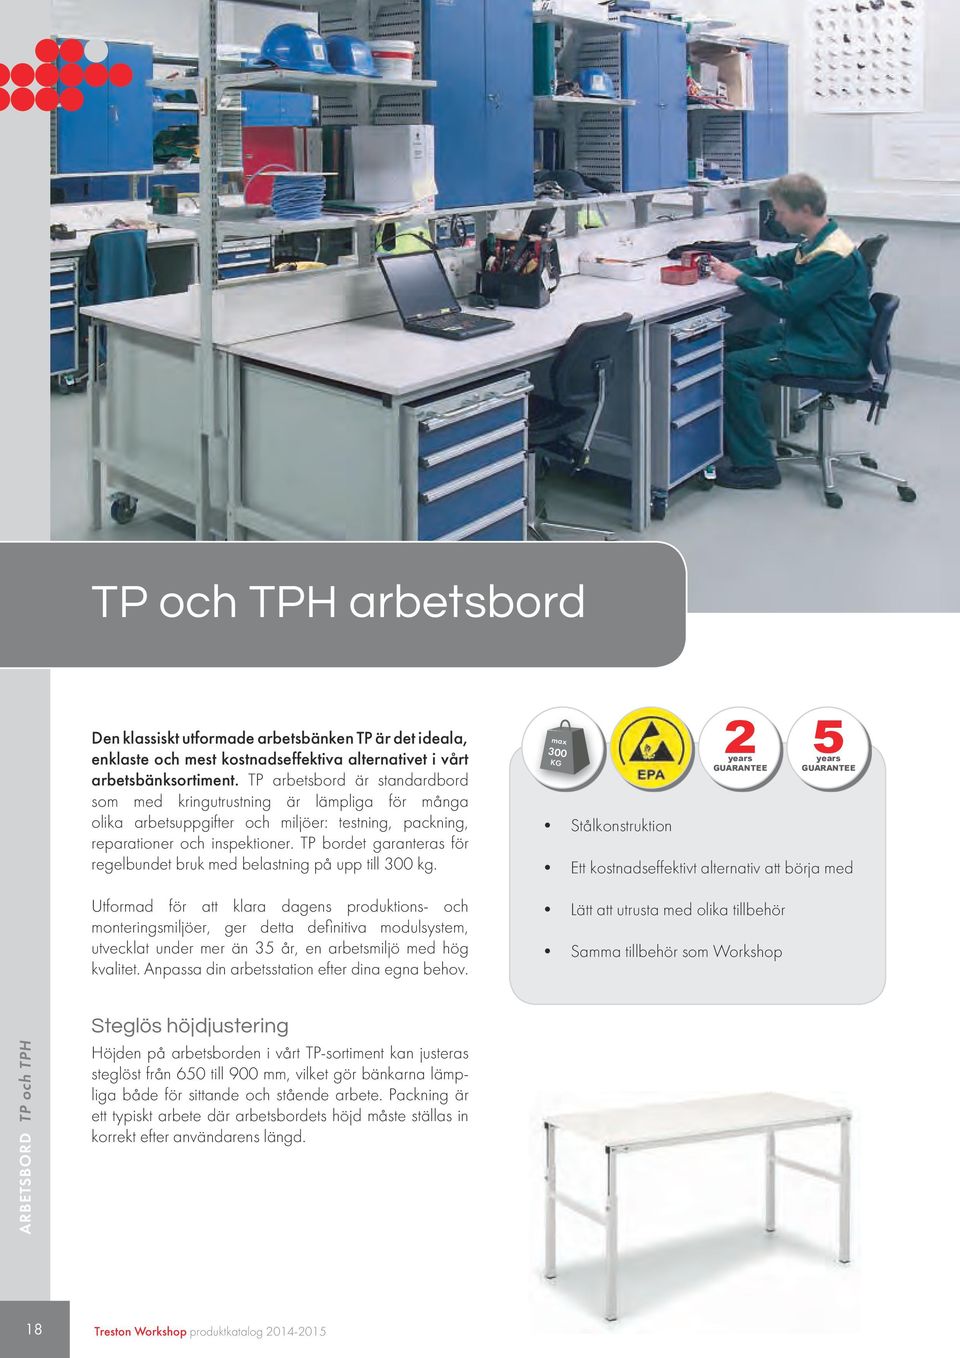 TP bordet garanteras för regelbundet bruk med belastning på upp till 300 kg.